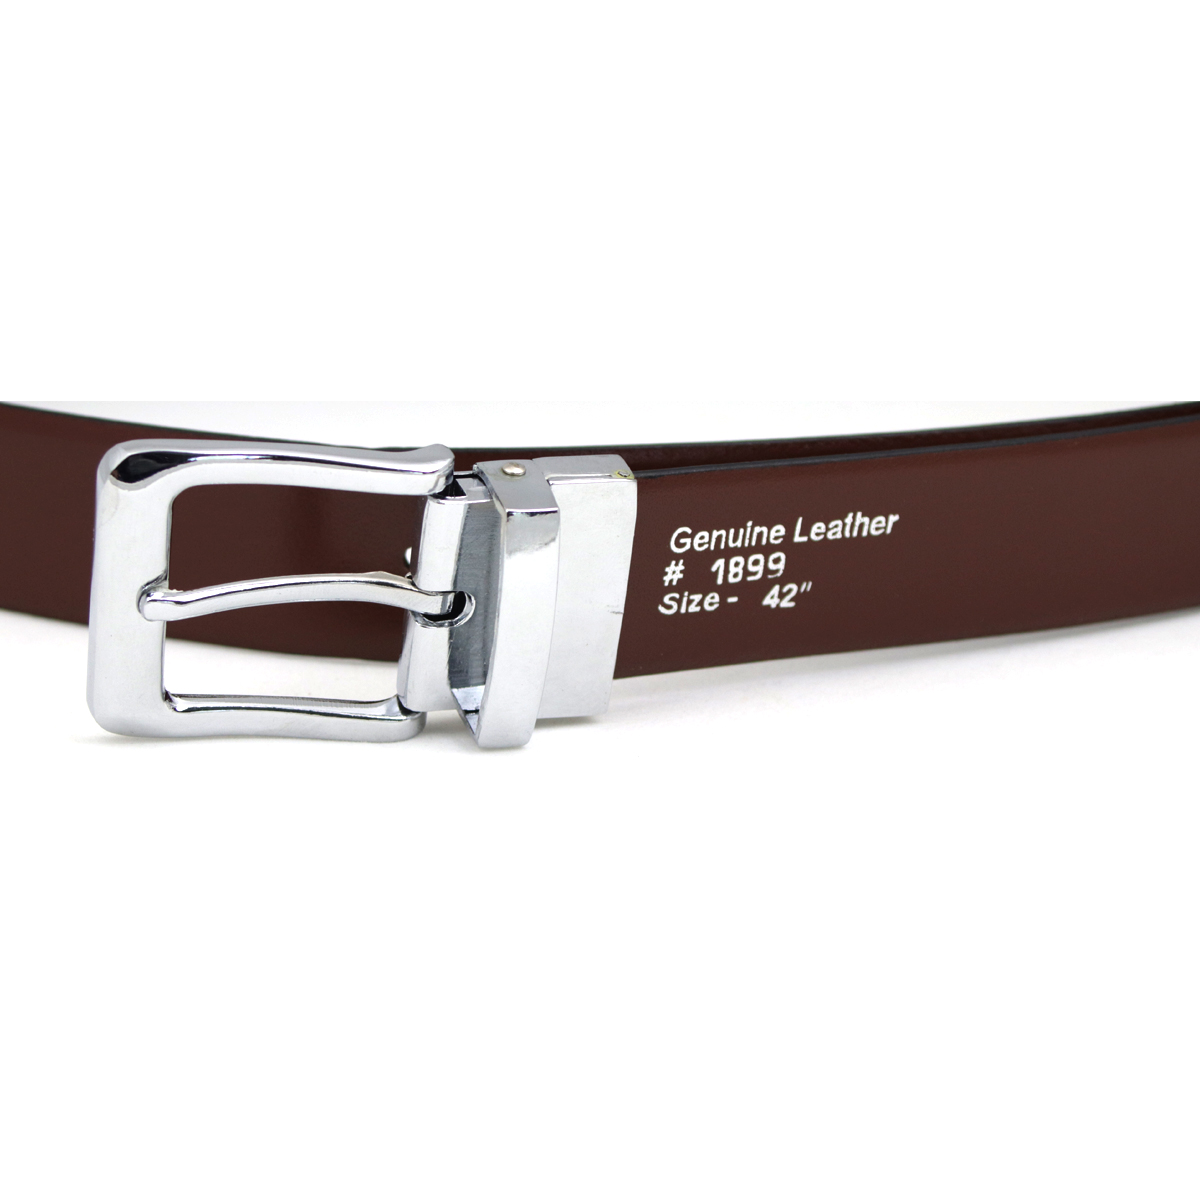 Reversible Belt Leather Mens Black Brown Reversible Belt Dress Belt Mens Belts Italian Leather Belt Nickel Silver Belt Buckle 1 1/8 inch